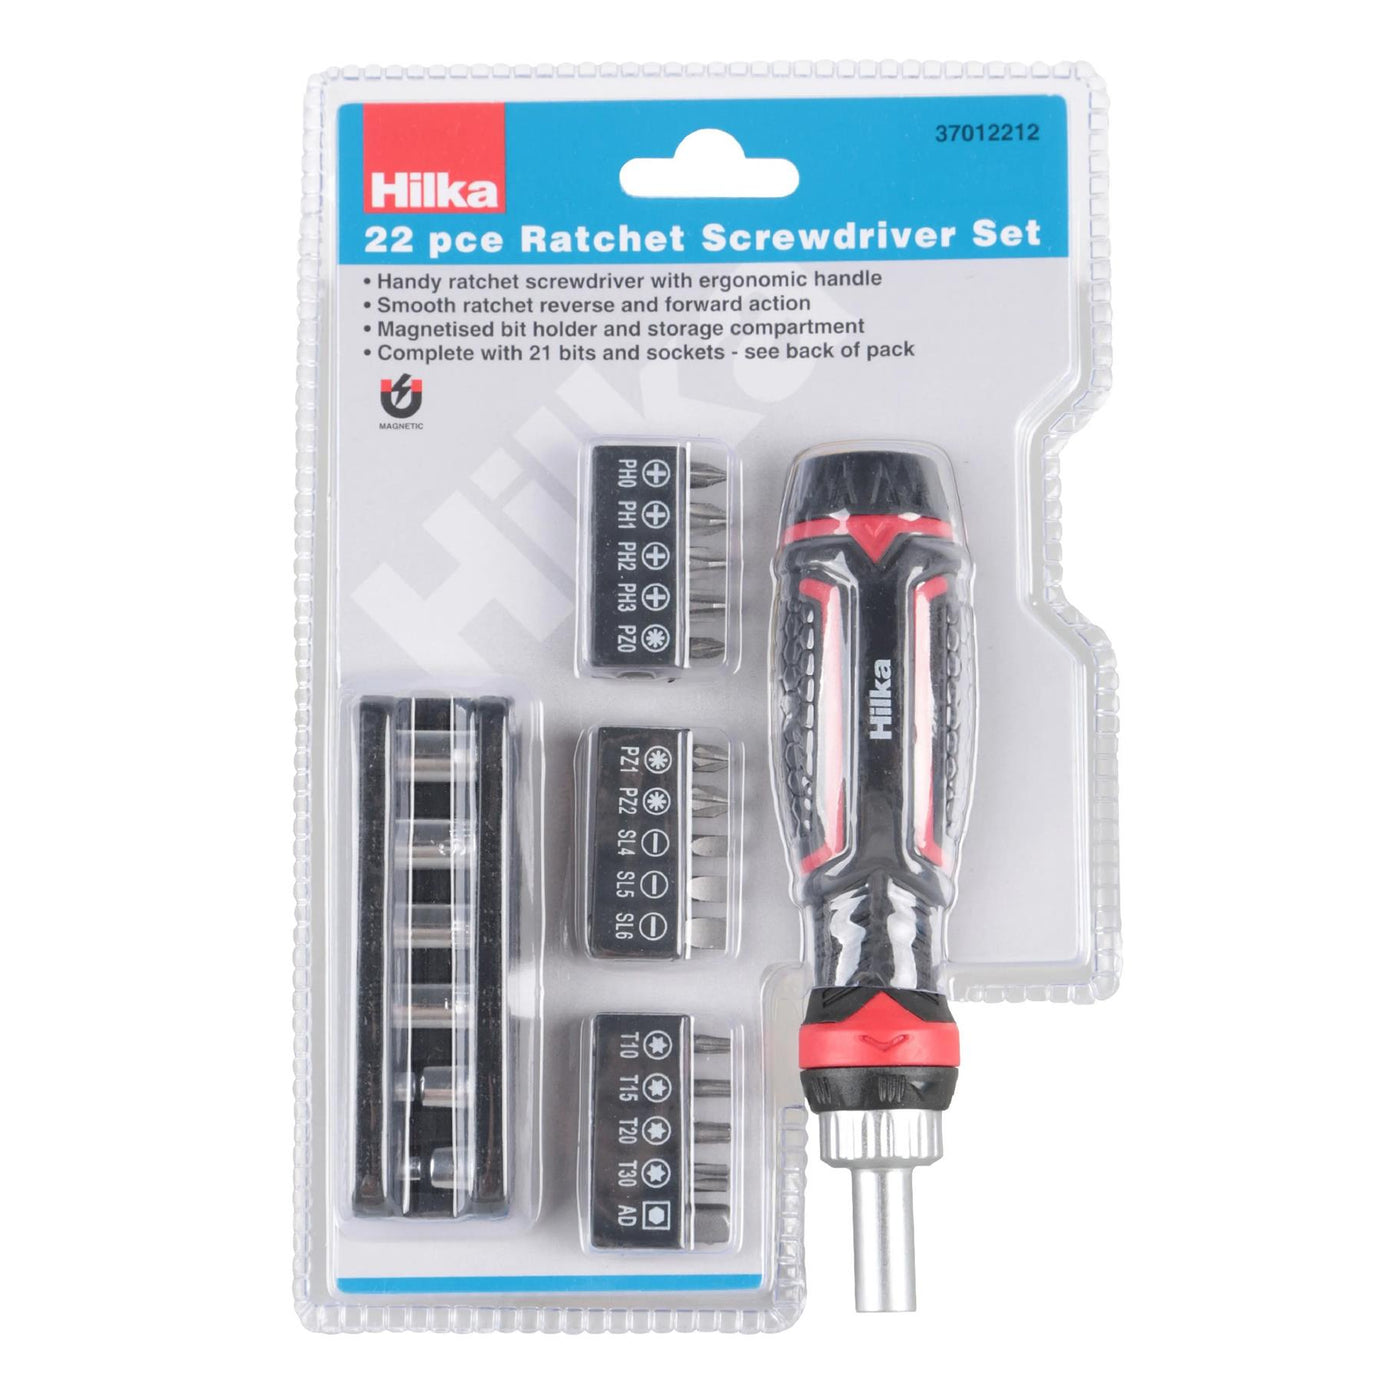 Hilka 22 Pcs Ratchet Screwdriver Set DIY Tool Kit Repair Precision Hand Tools